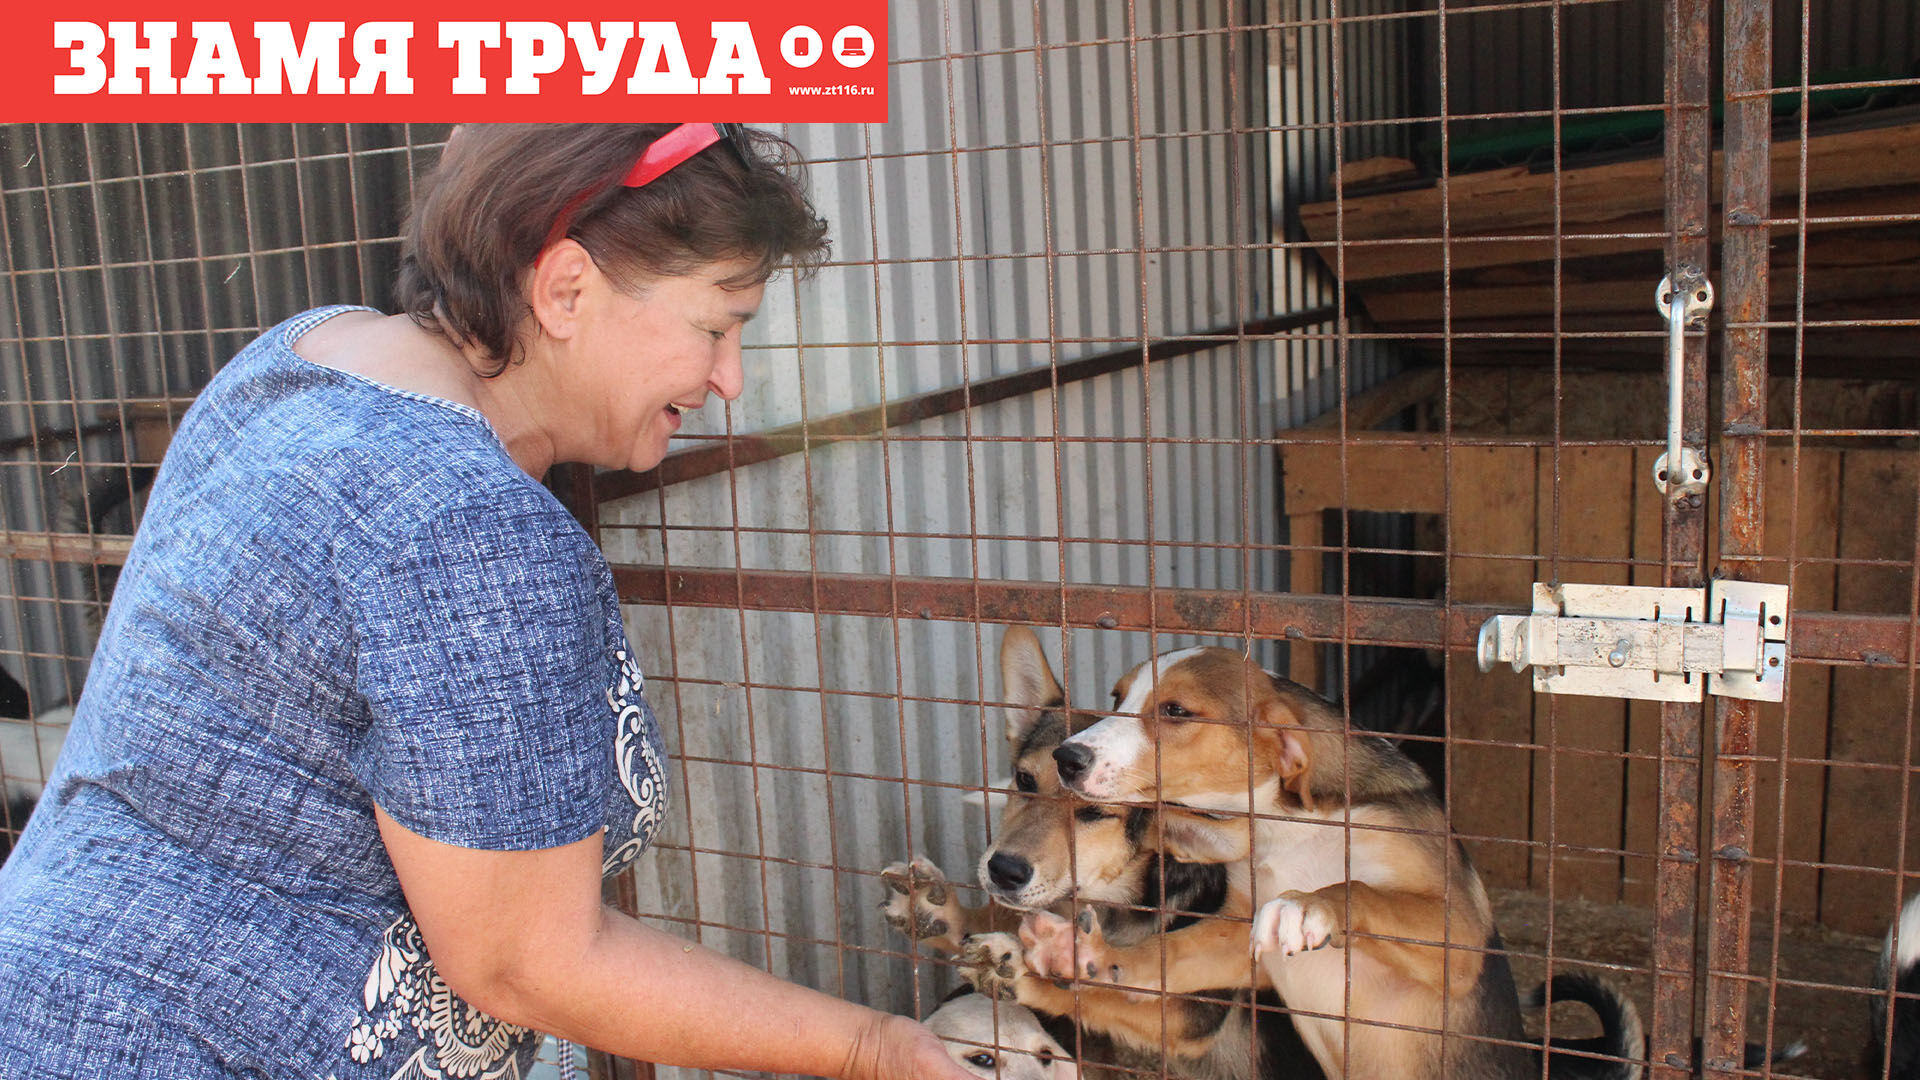 Никогда не сдавайся: реабилитационный центр «Кошкин дом» спасает бездомных животных